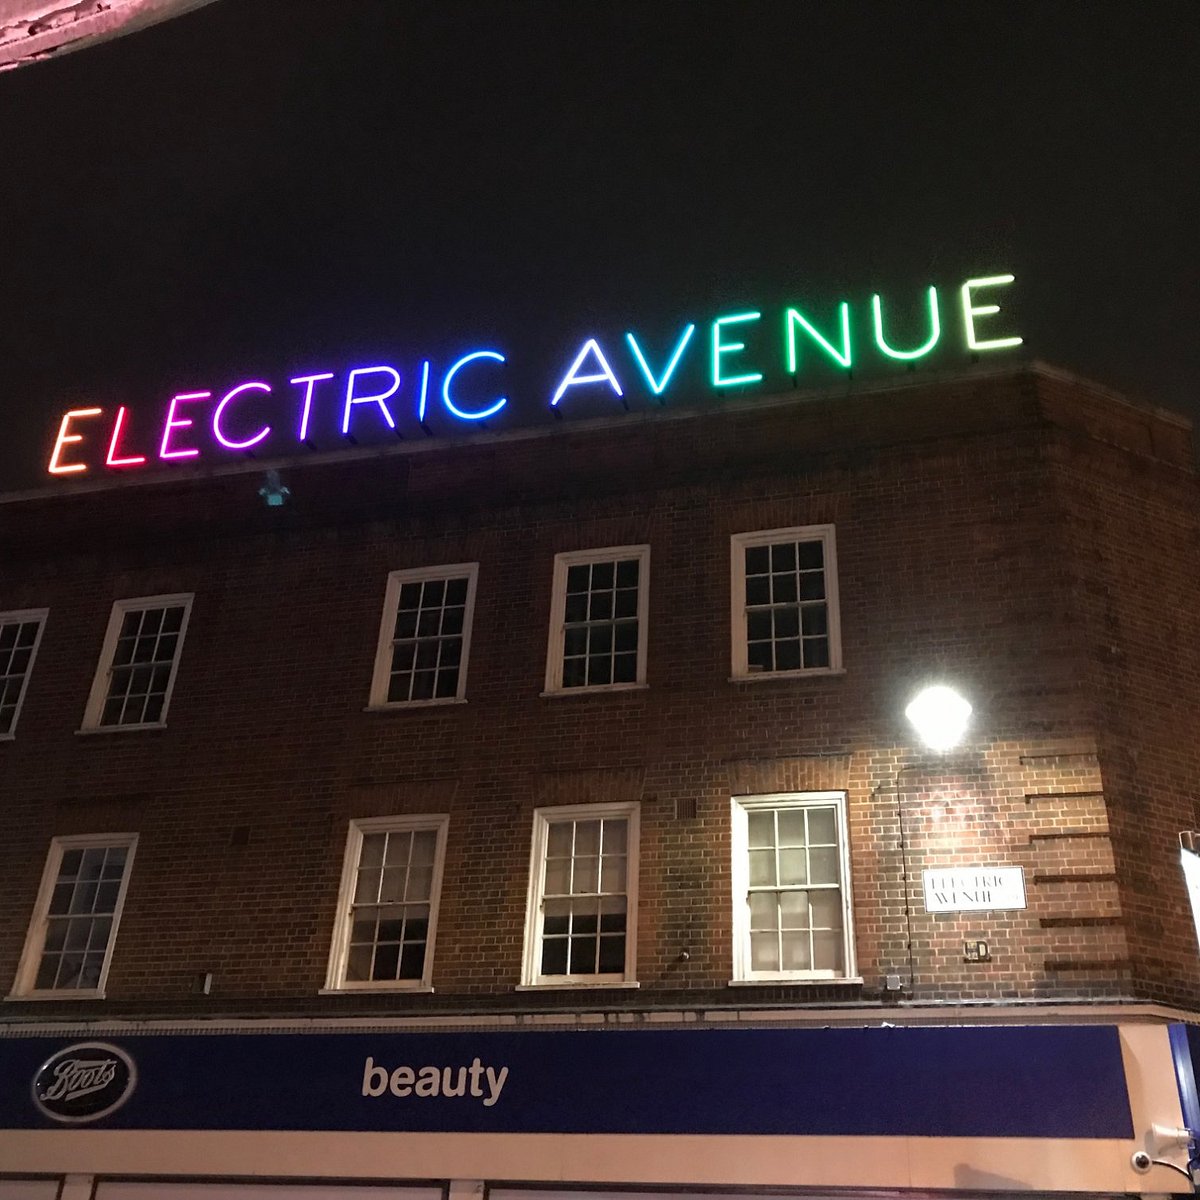 electric avenue tour